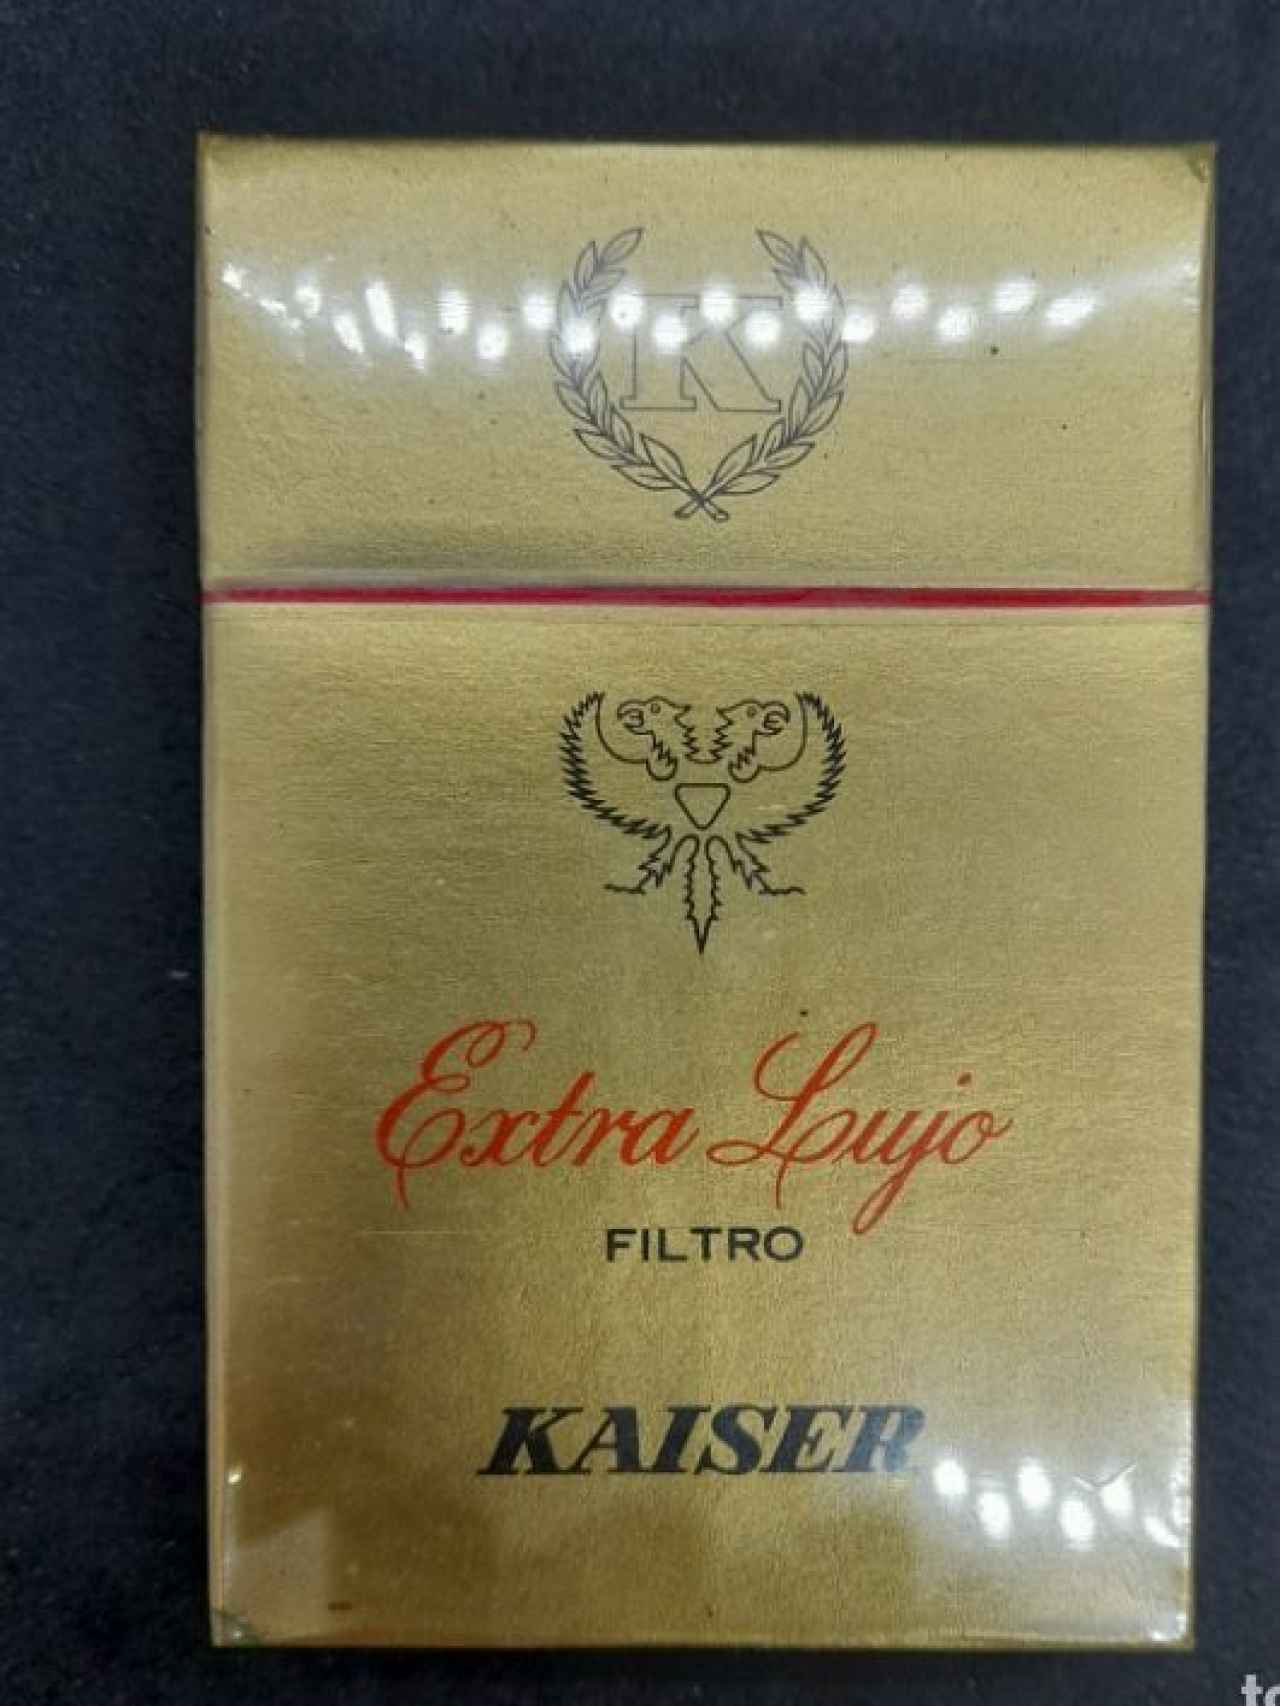 Paquete de tabaco Kaiser.